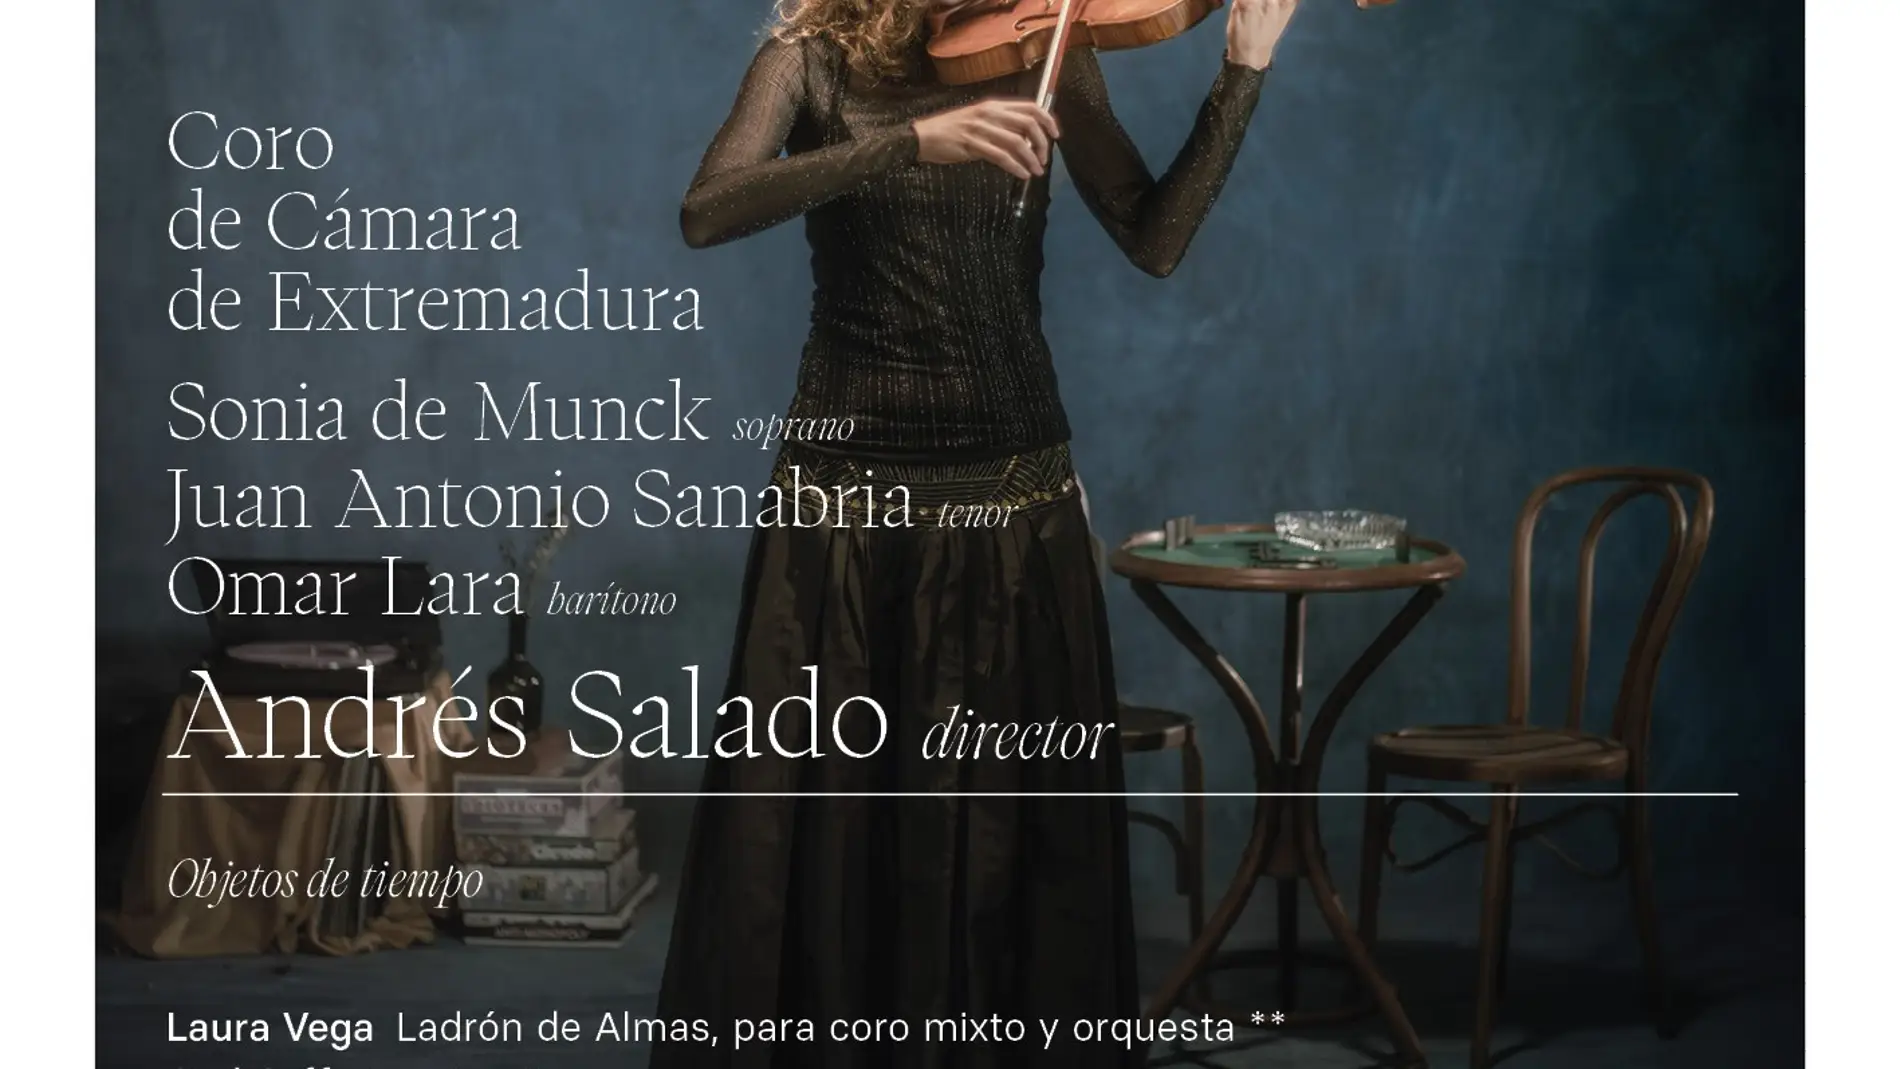 La Orquesta de Extremadura pone en escena este viernes en Mérida 'Ladrón de Almas', de Laura Vega